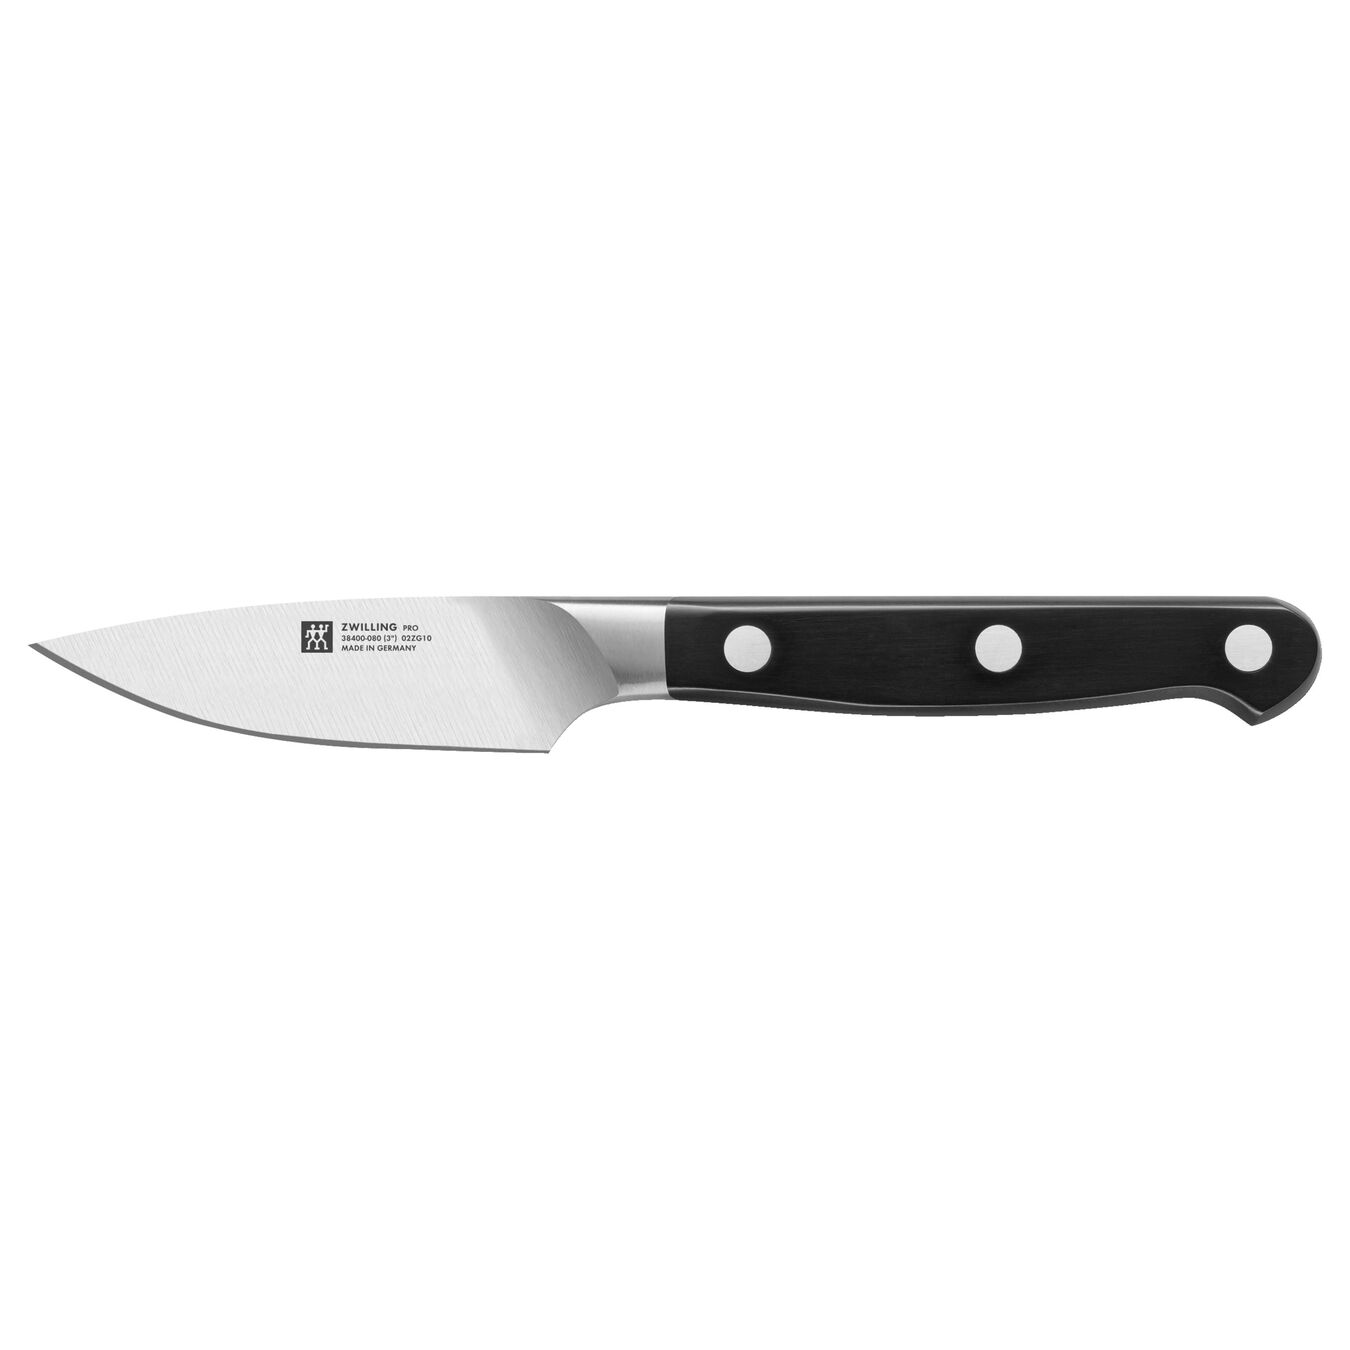 Soyma Doğrama Bıçağı | Özel Formül Çelik | 8 cm,,large 1